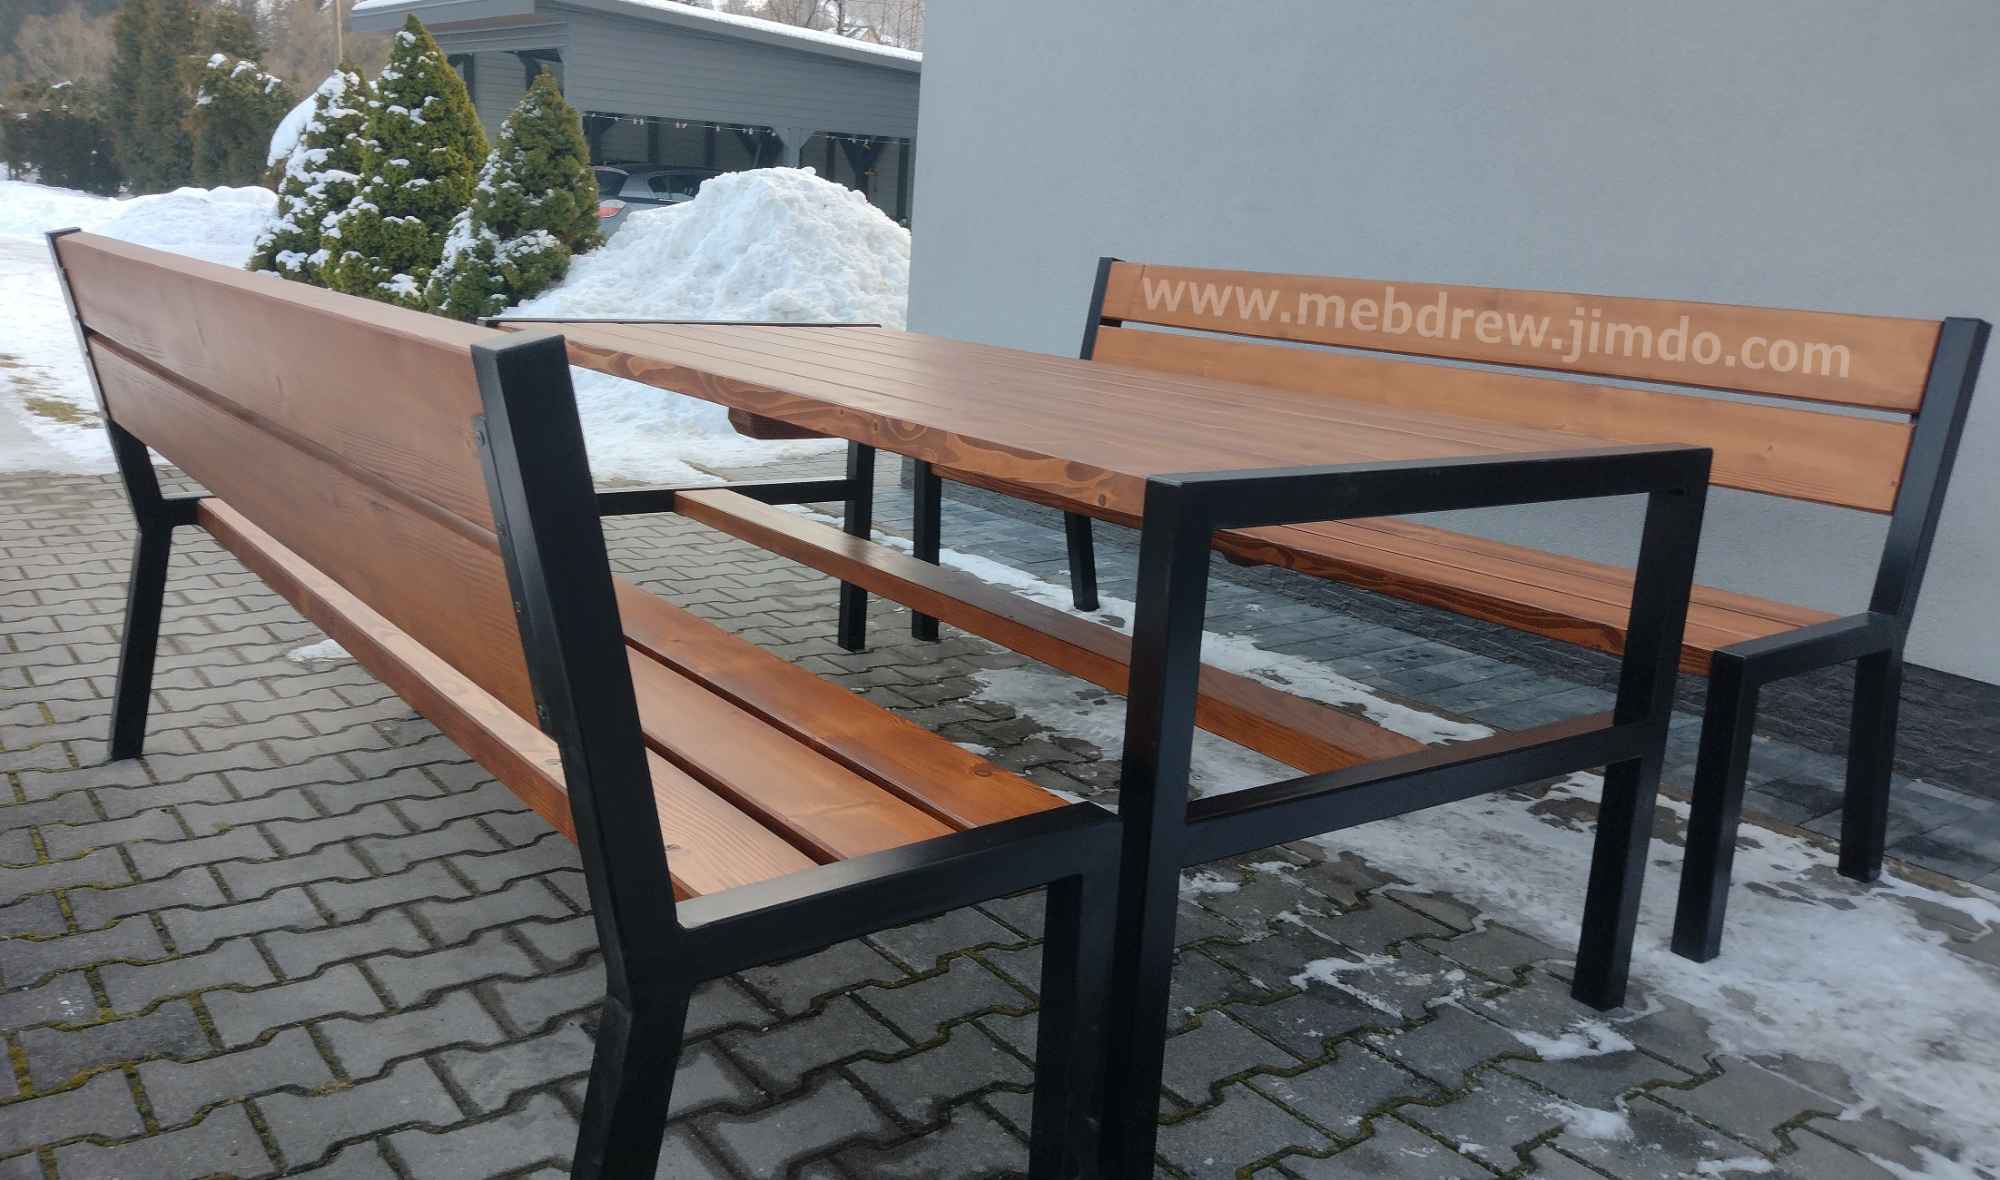 Stół loft ogrodowy drewno+metal ławki fotele zestaw mebli Tokarnia - zdjęcie 4